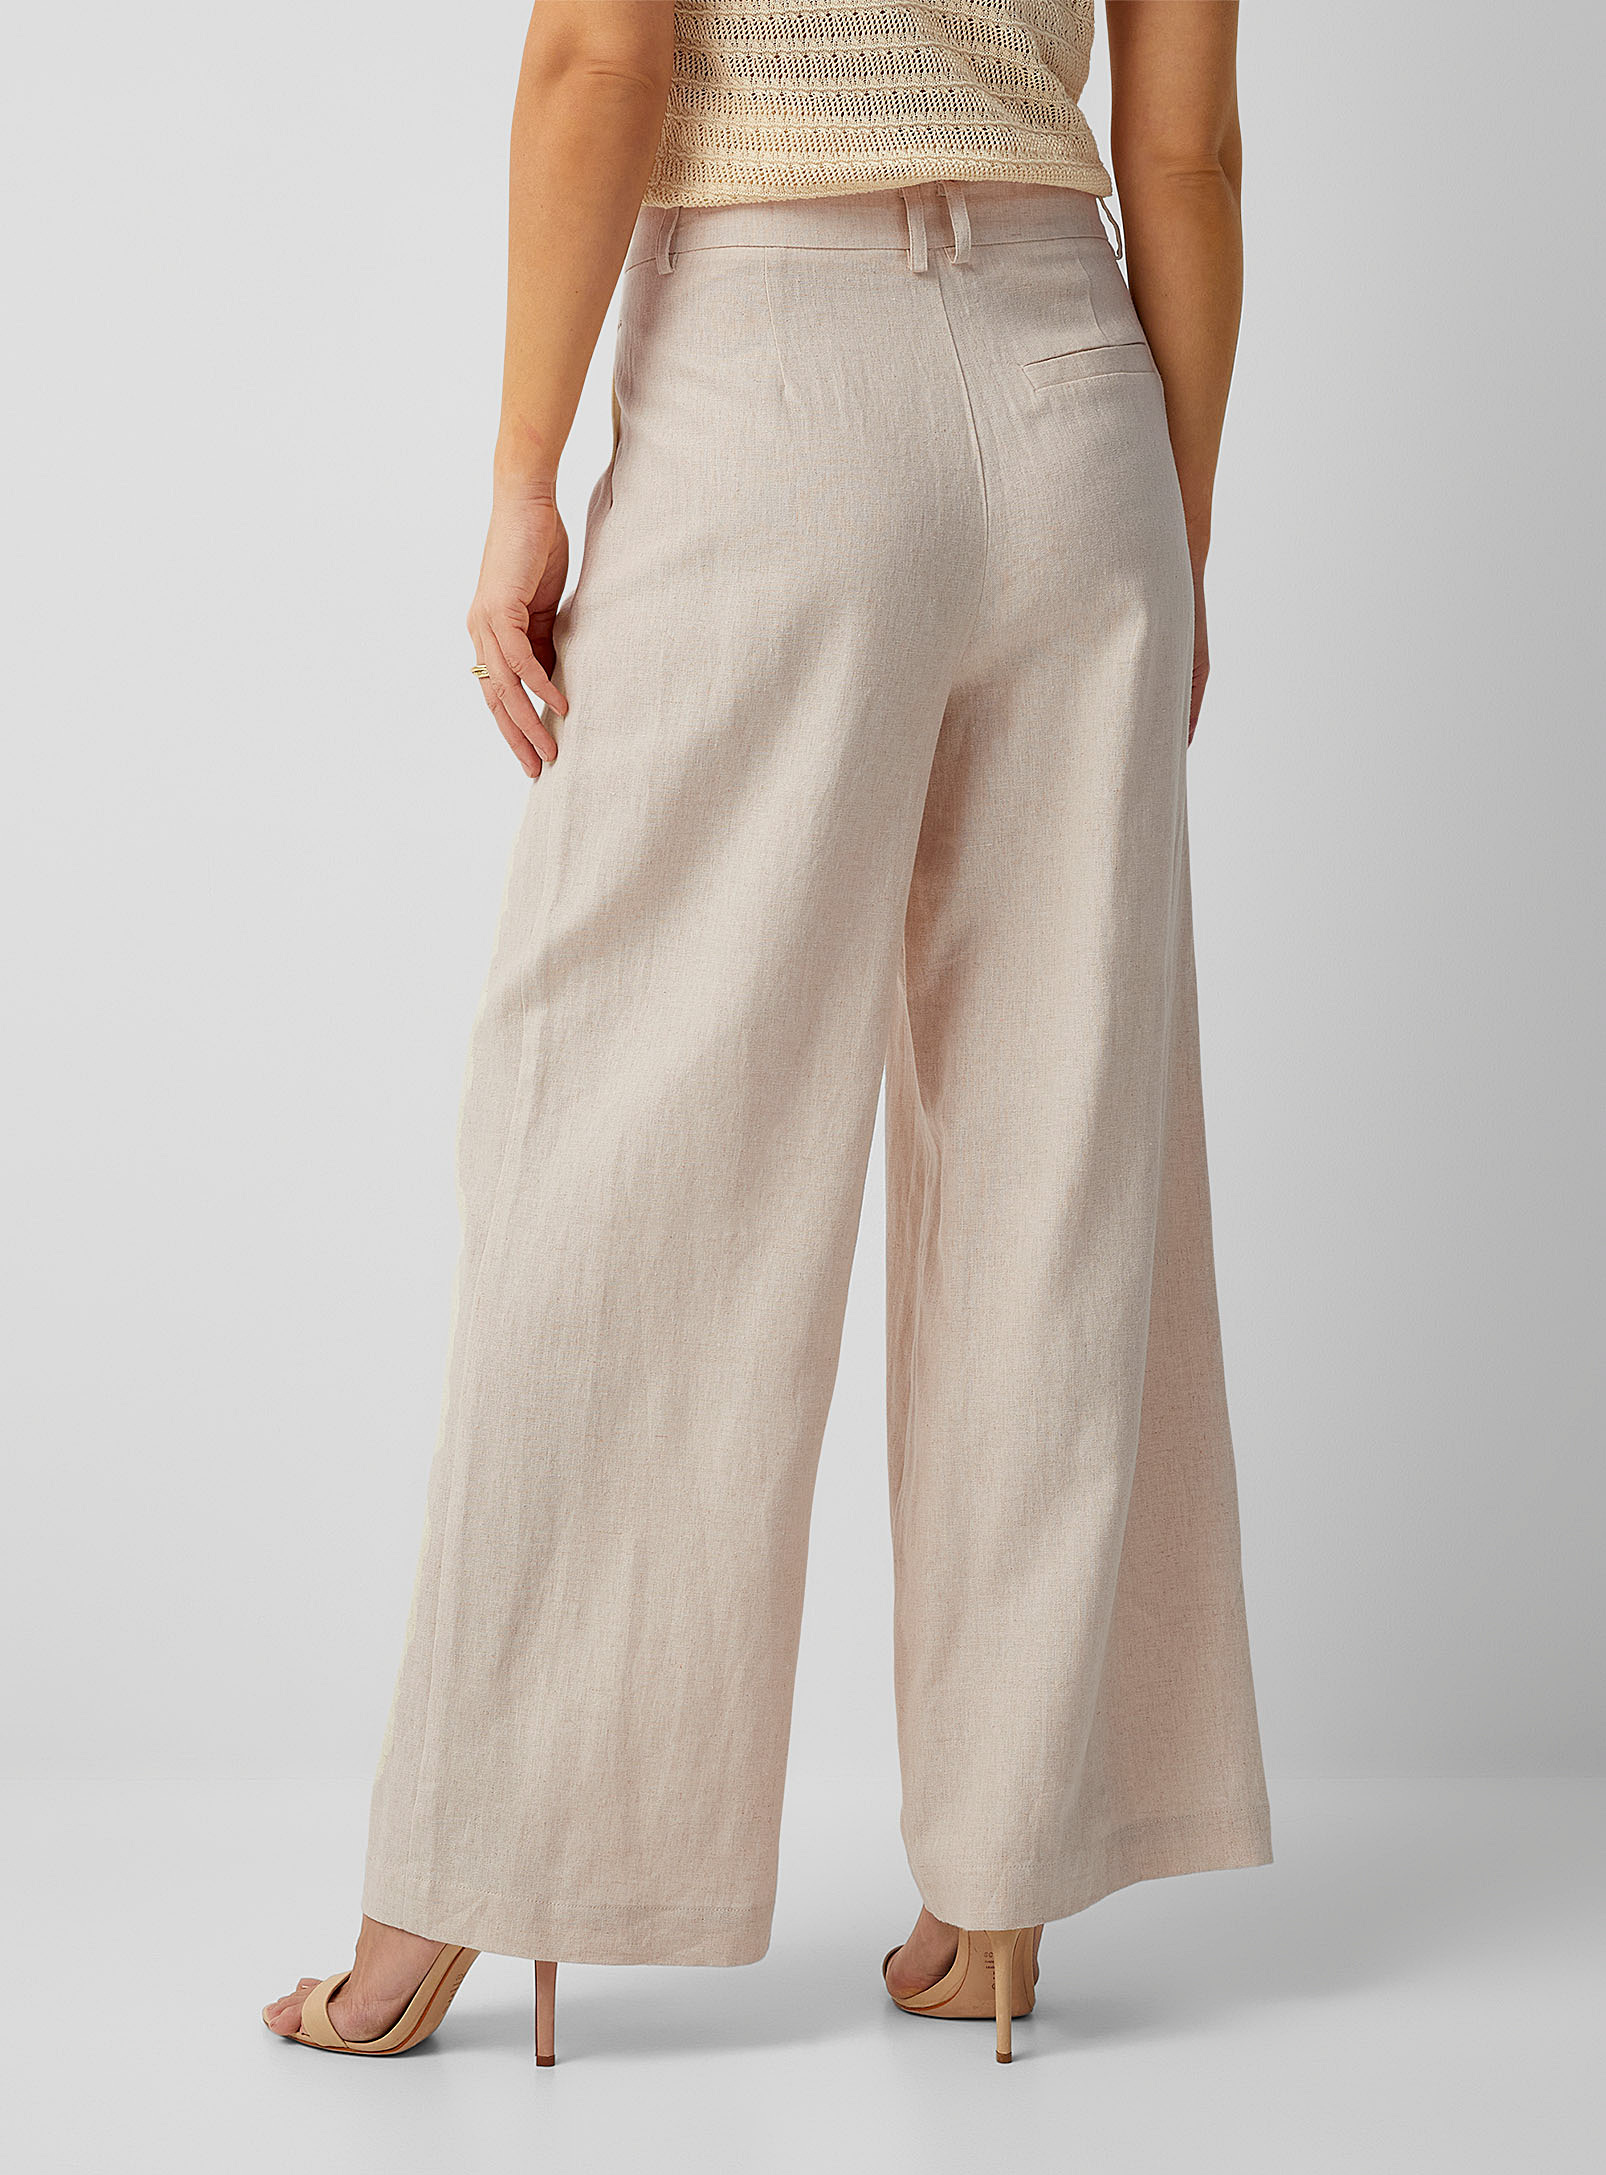 Saint Tropez - Le pantalon lin naturel taille à plis Estelle